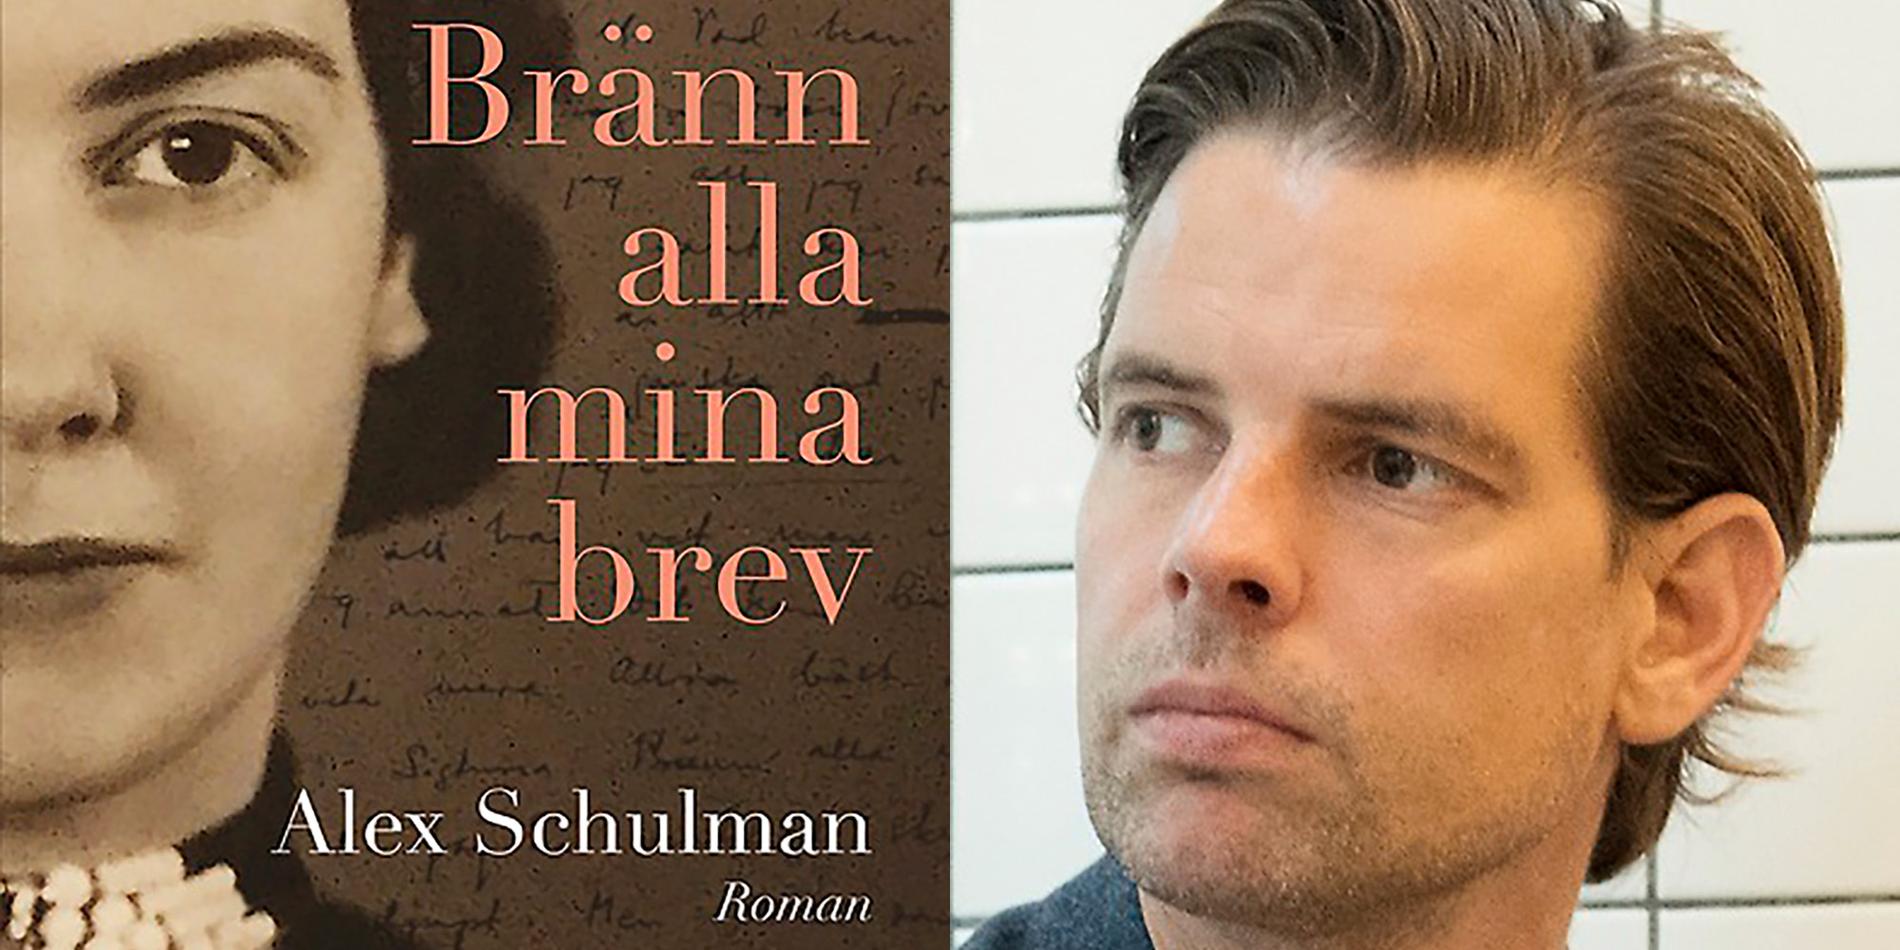 Författaren, skribenten och poddaren Alex Schulman  (född 1976).